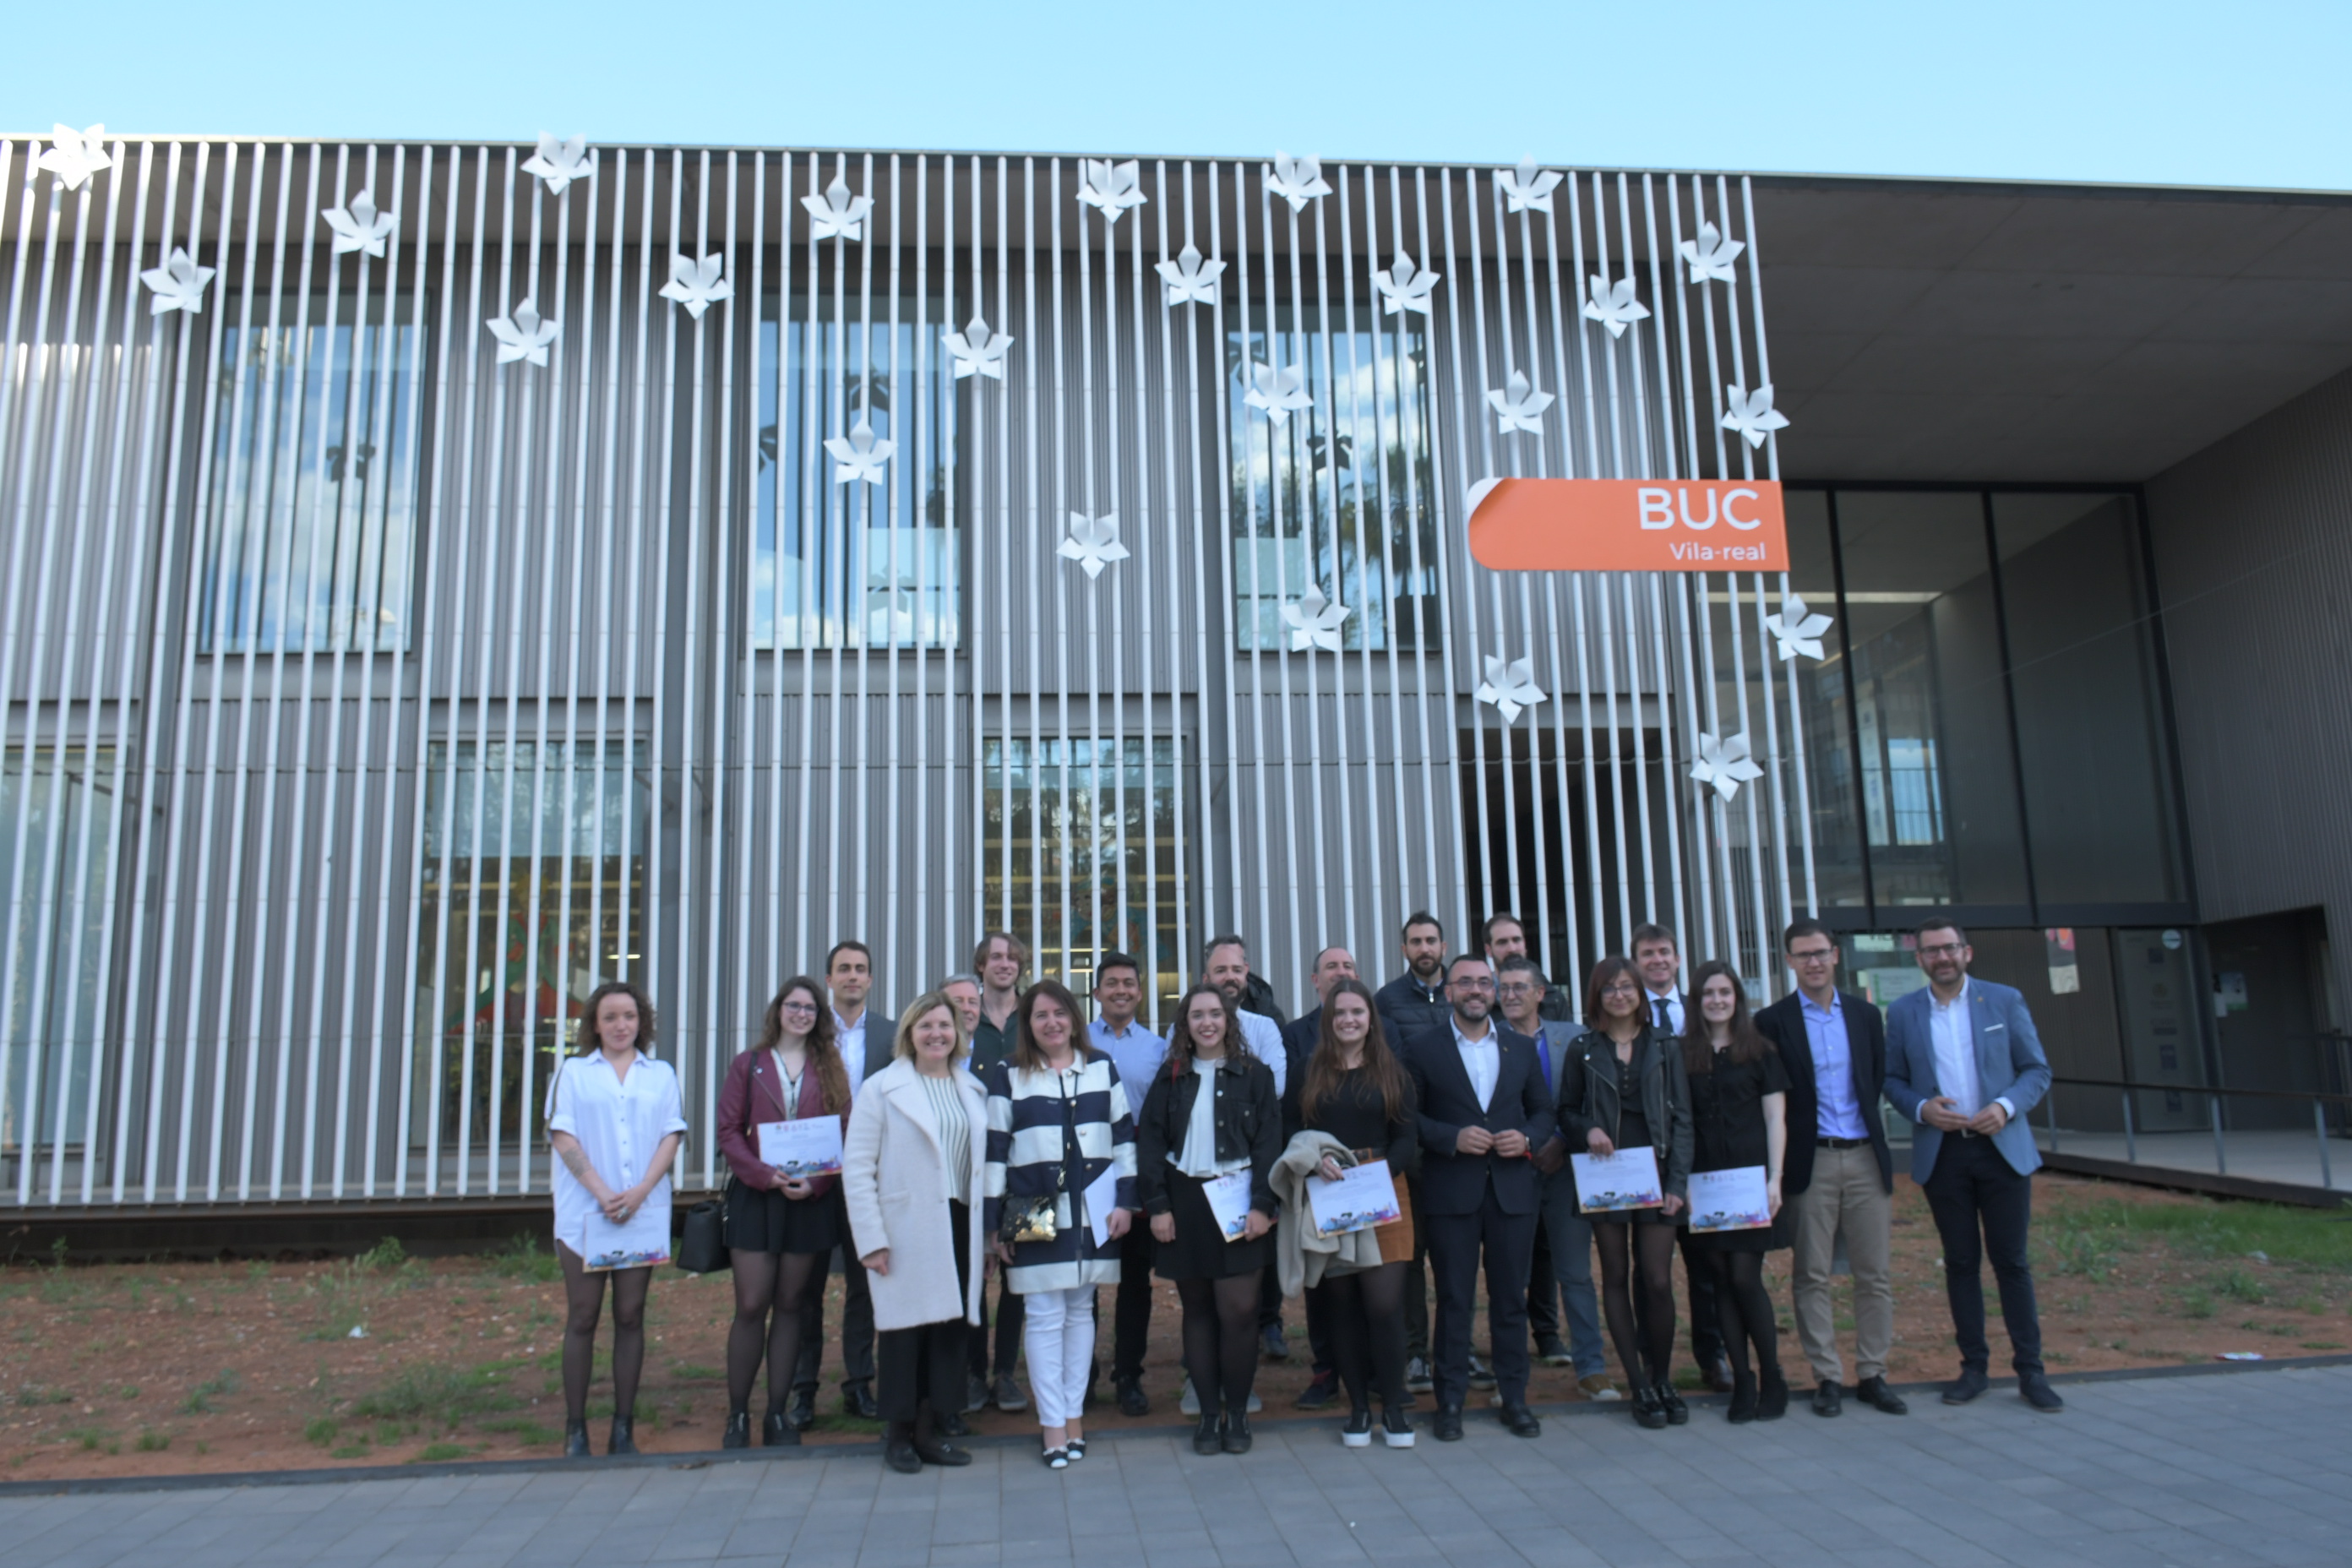 Vila-real premia a los alumnos y profesores de la EASD por el proyecto de arquitectura efímera de la BUC